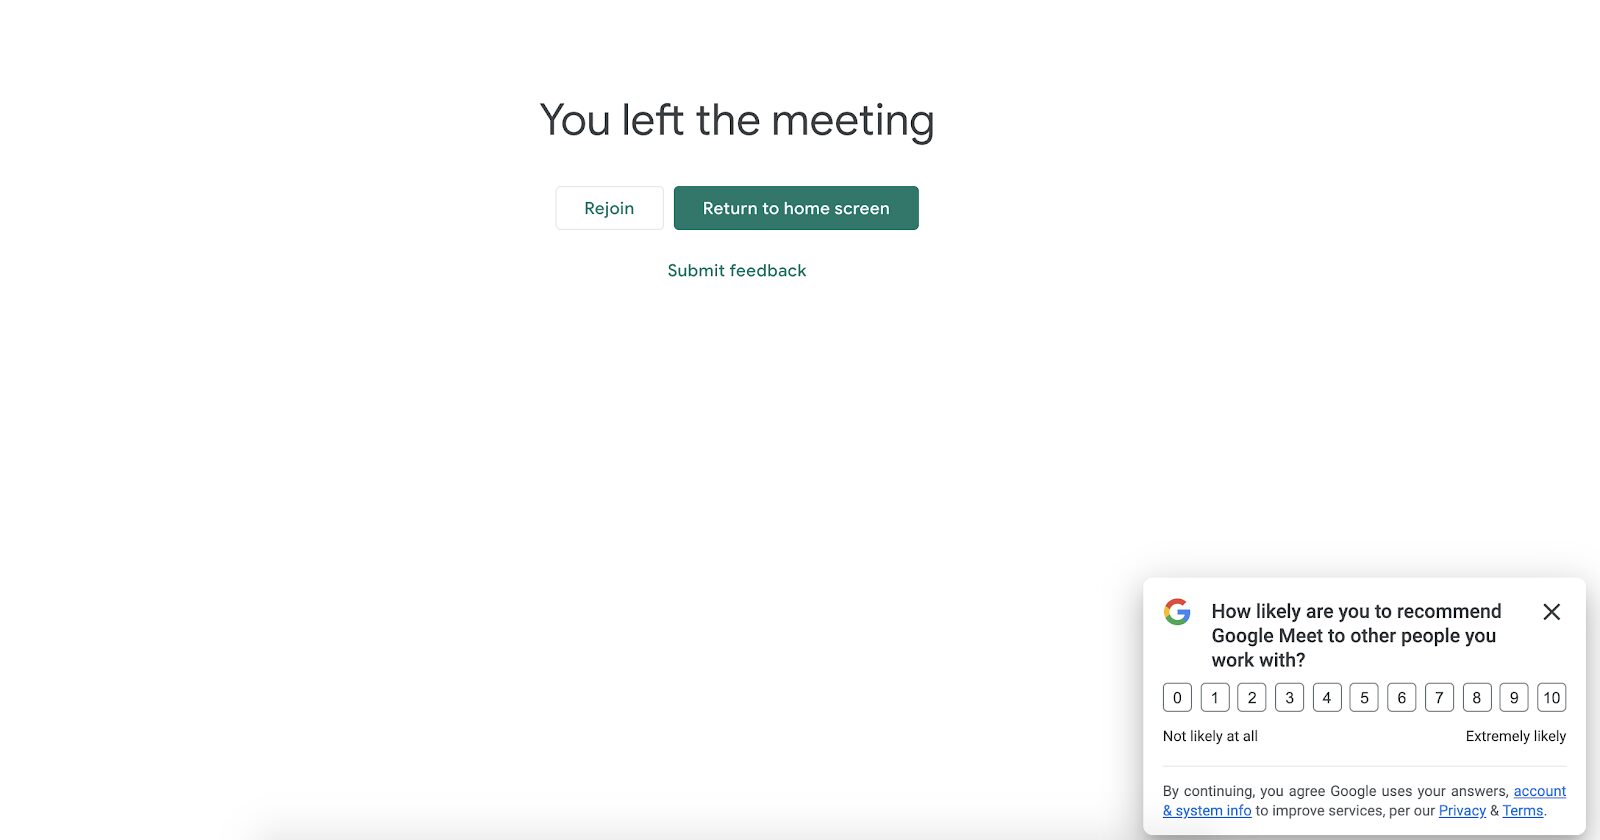 Sondajul NPS de la Google Meet apare după ce vizitatorul încheie un apel, astfel încât acesta să poată oferi imediat feedback despre experiența sa. Este o tactică grozavă de a încuraja utilizatorii să împărtășească feedback cât timp este încă proaspăt.